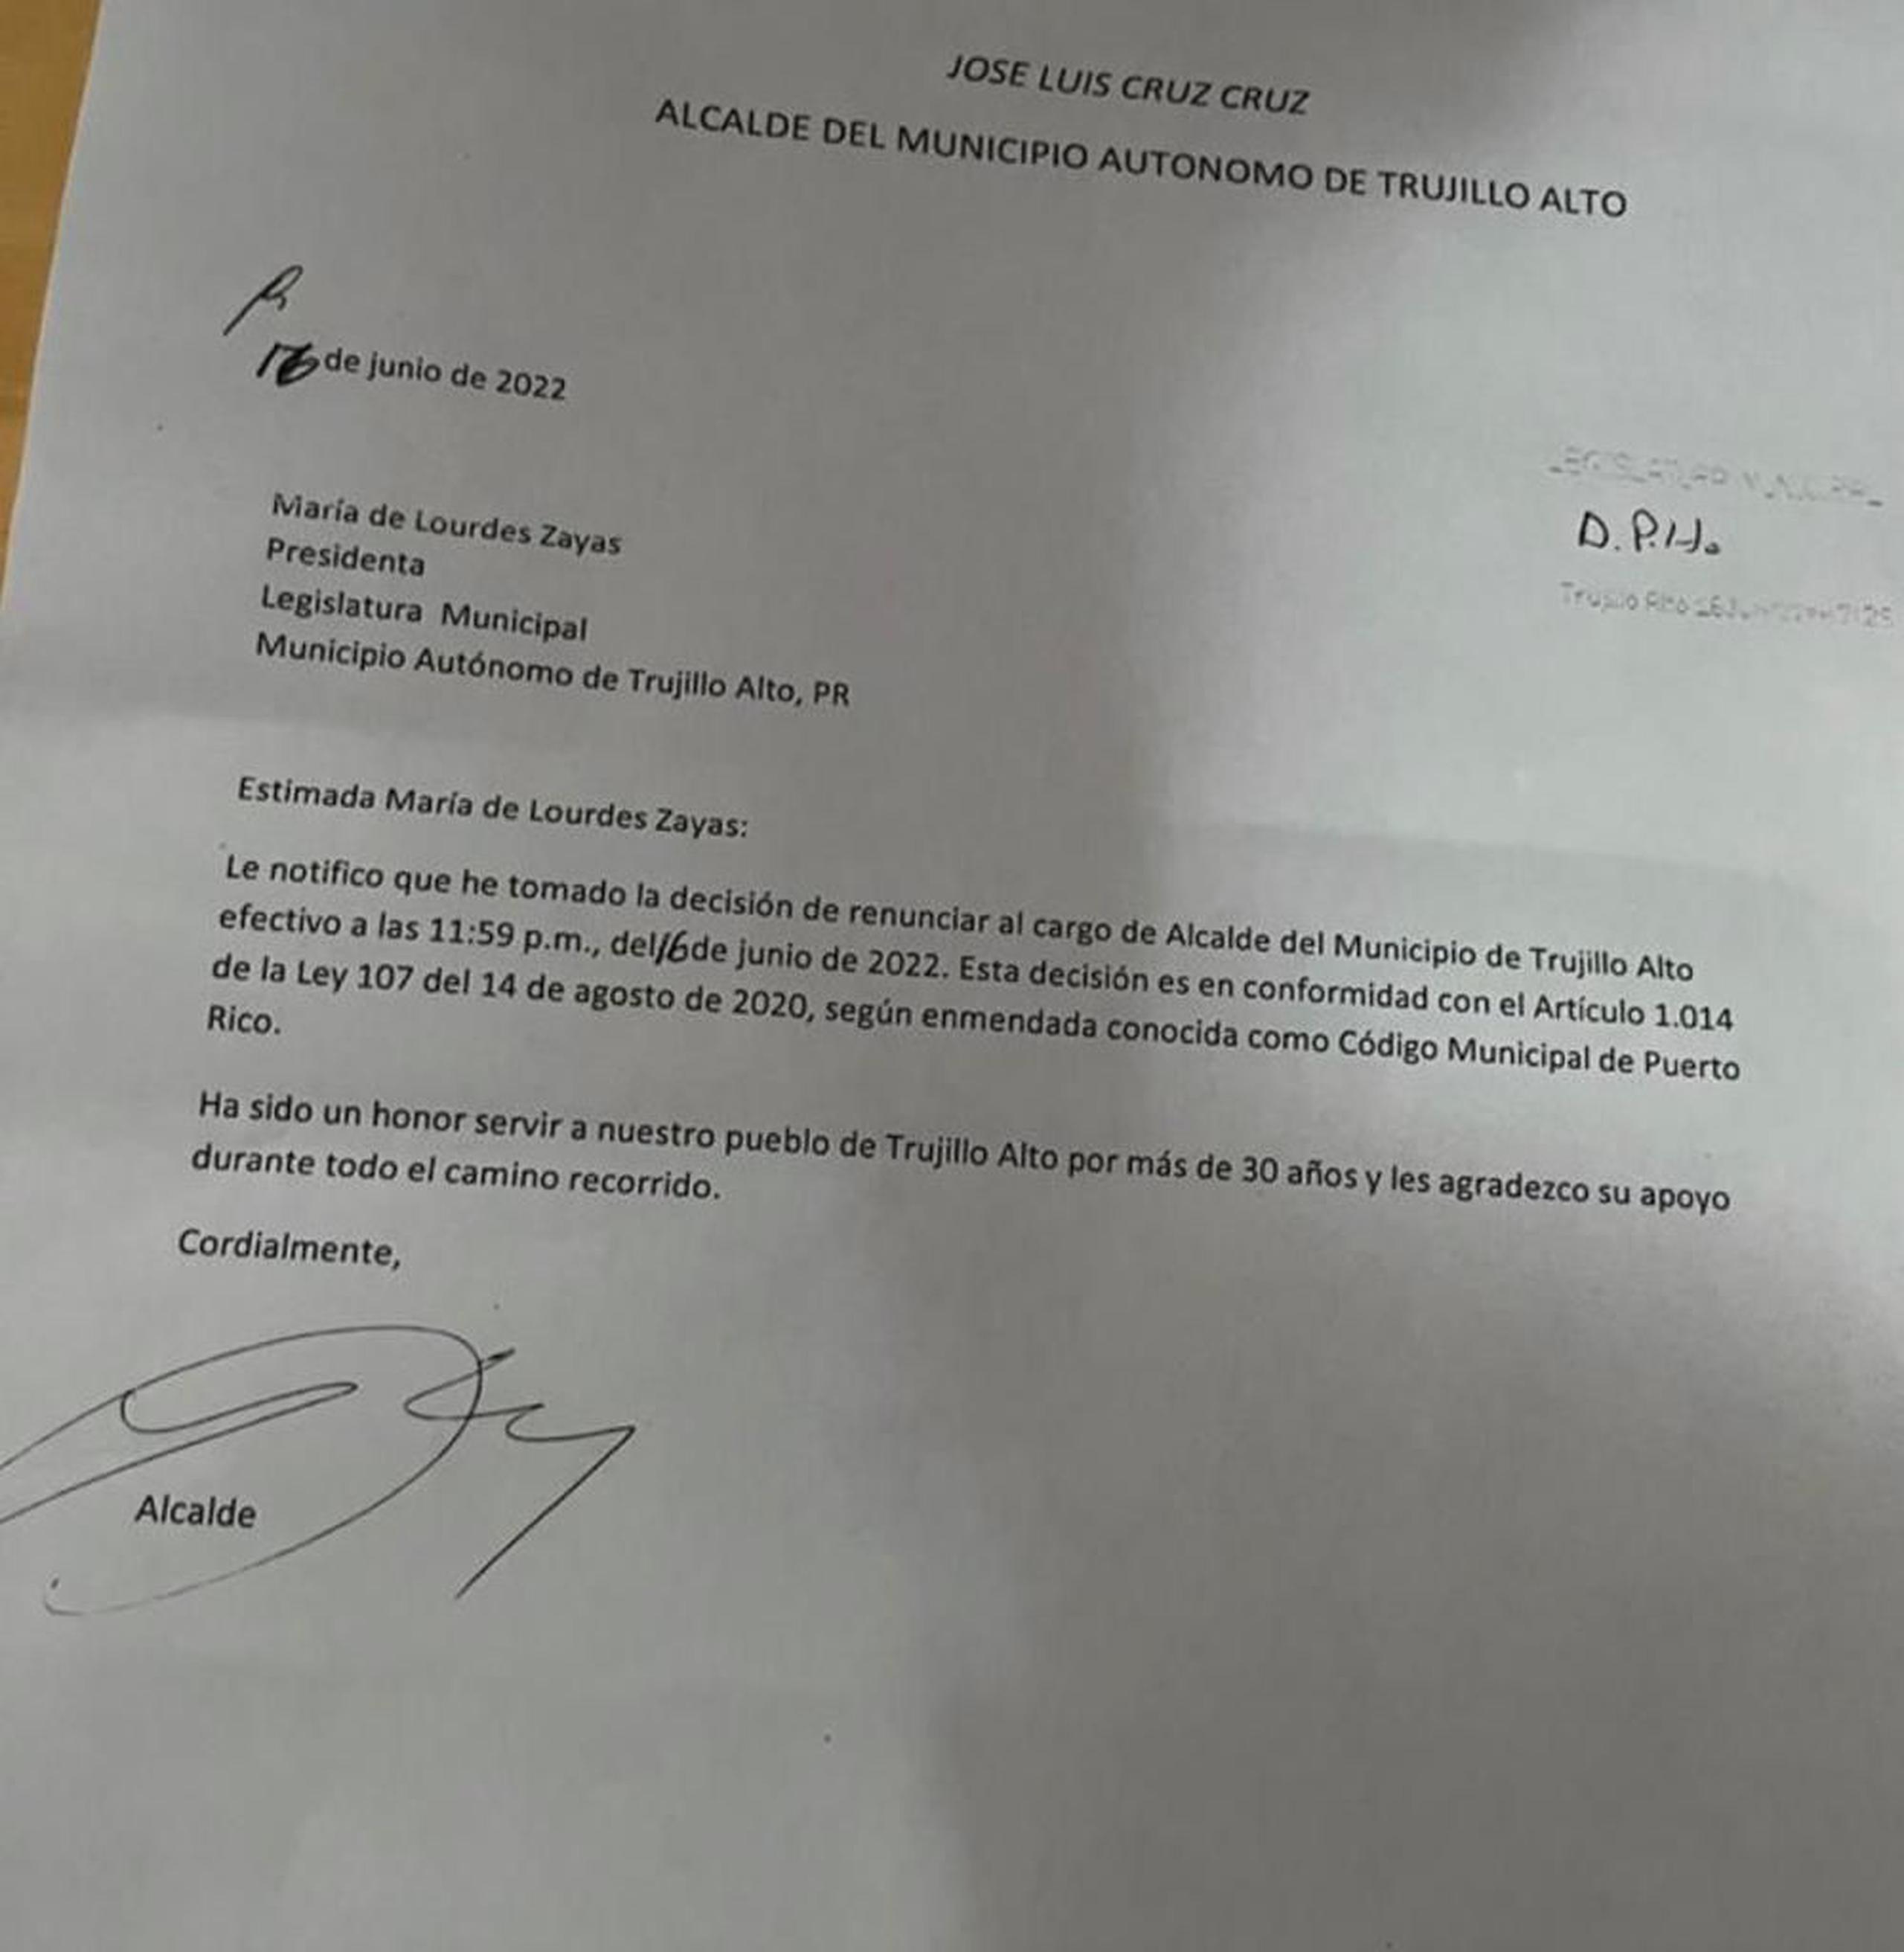 Carta que el alcalde de Trujillo Alto, José Luis Cruz Cruz, envió a la presidenta de la legislatura municipal, Lourdes Zayas Alemán, para informar su renuncia.